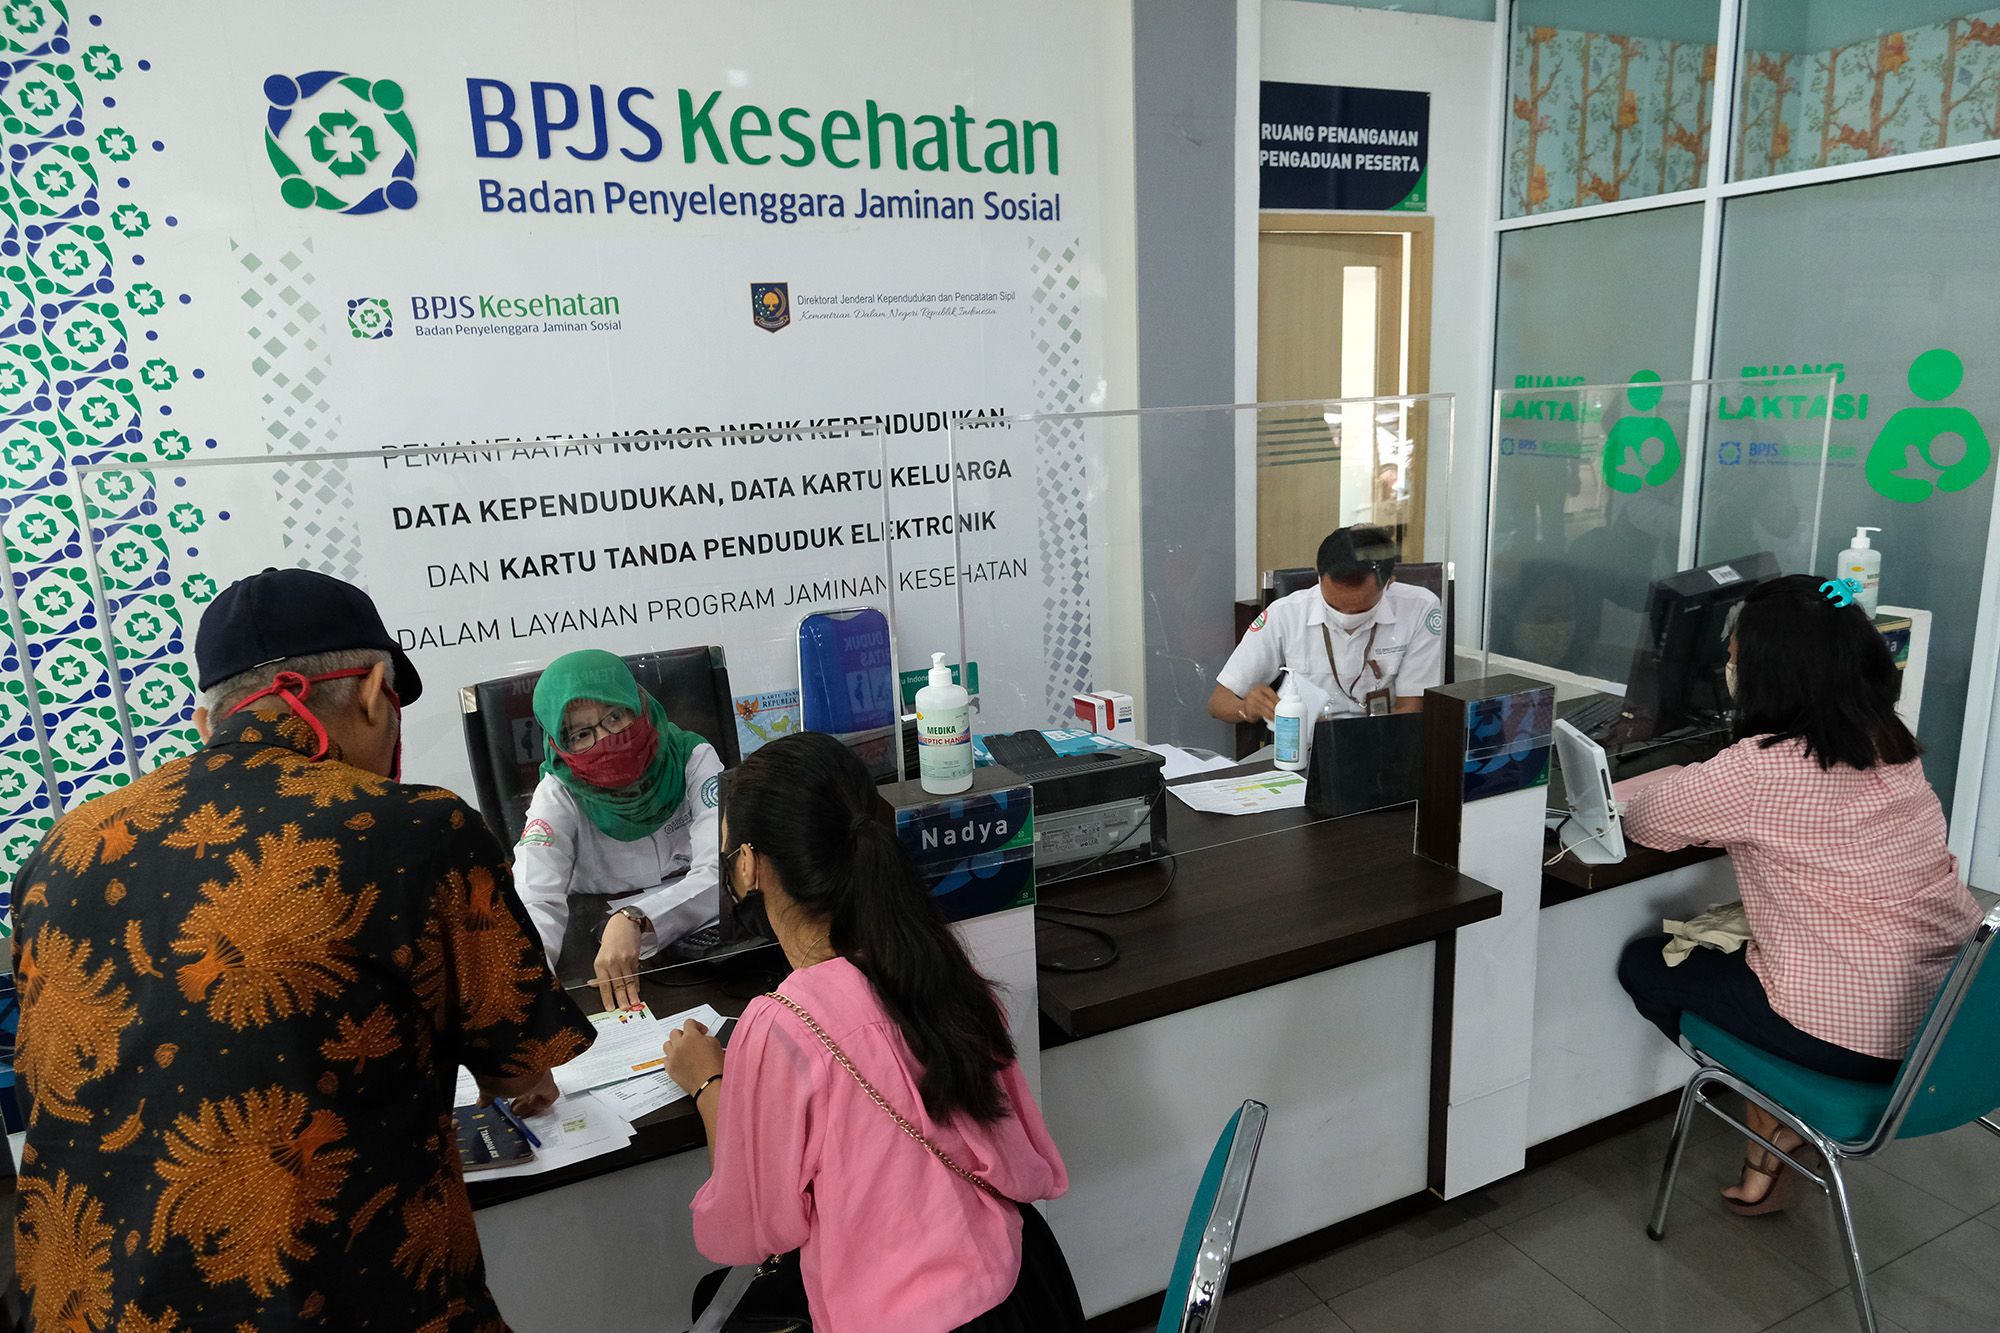 <p>Karyawan melayani warga peserta BPJS Kesehatan di Jakarta, Selasa, 14 Juni 2020. BPJS Kesehatan menyatakan telah menuntaskan pembayaran klaim rumah sakit per 1 Juli sebesar Rp3,70 triliun seiring awal bulan Juli BPJS Kesehatan telah menerima iuran peserta Penerima Iuran Bantuan (PIB) APBN dari pemerintah sebesar Rp4,05 triliun. Foto: Ismail Pohan/TrenAsia</p>
